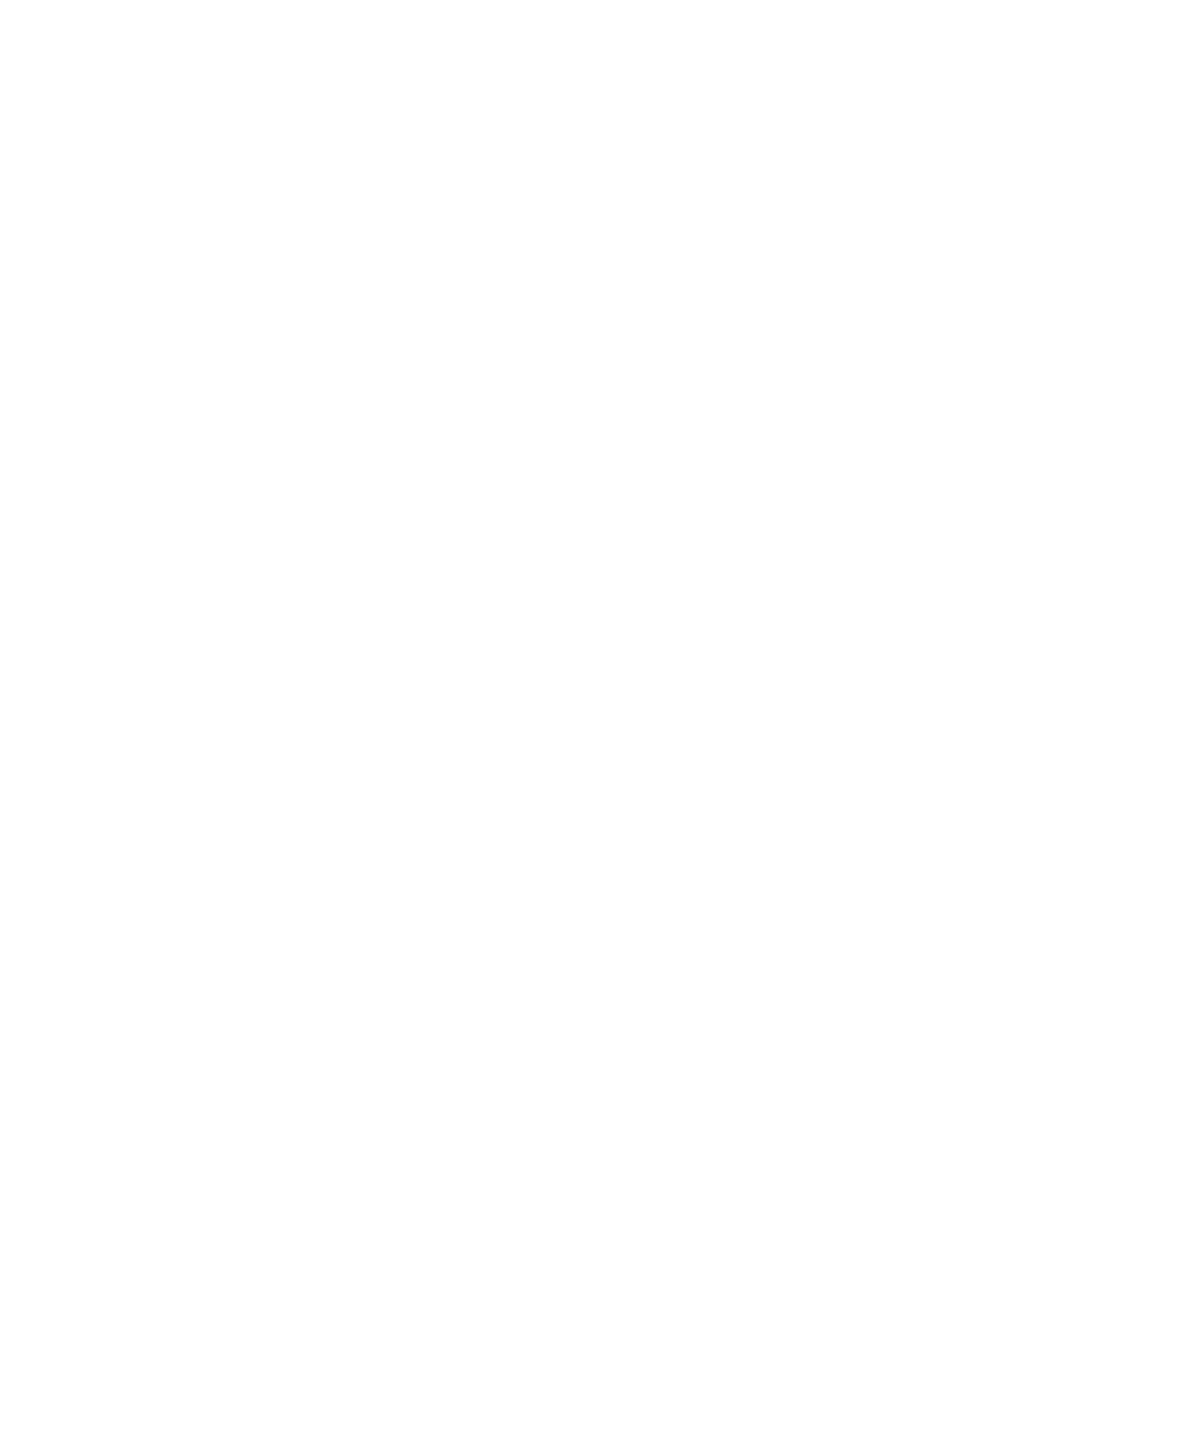 Glenna's